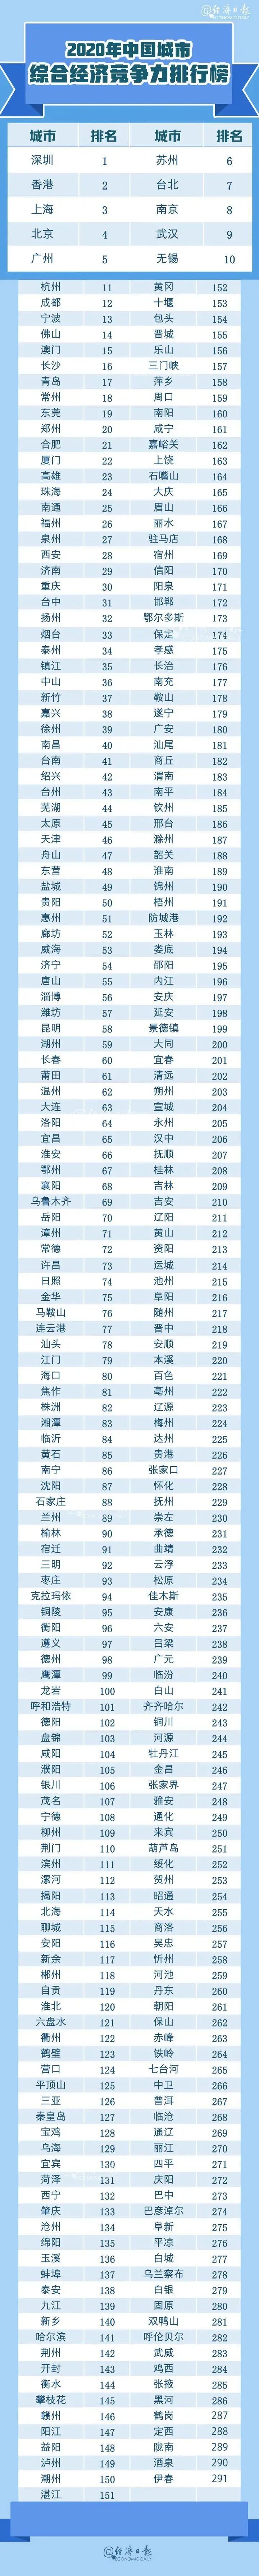 中国省会gtp排名2020_2020年上半年全国省会城市GDP排行榜